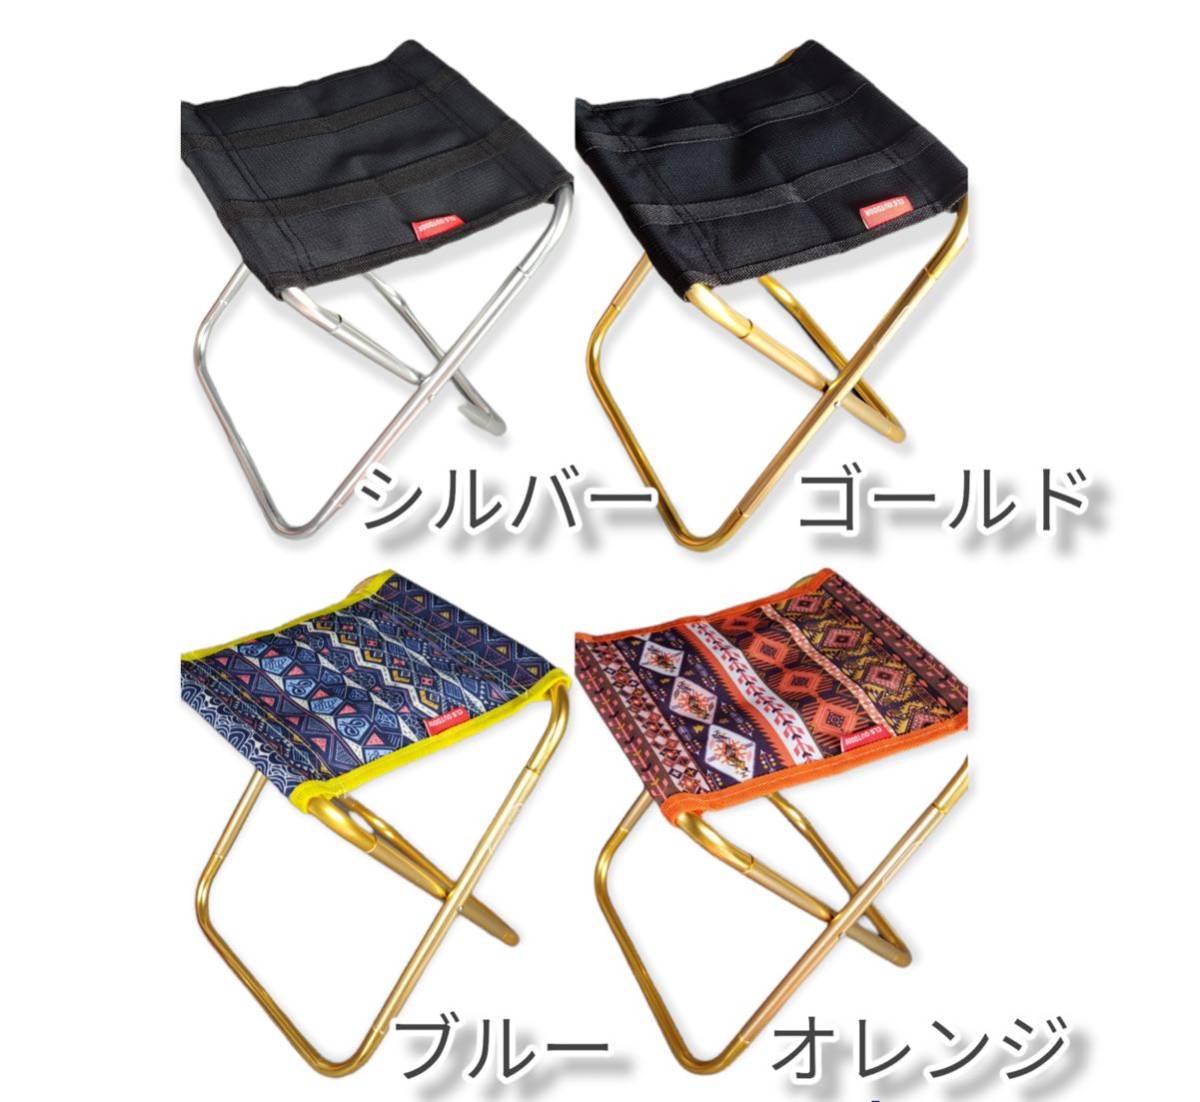 春セール中!!アウトドアチェア 折り畳み椅子 超軽量 収納袋付 持ち運び便利 シルバー